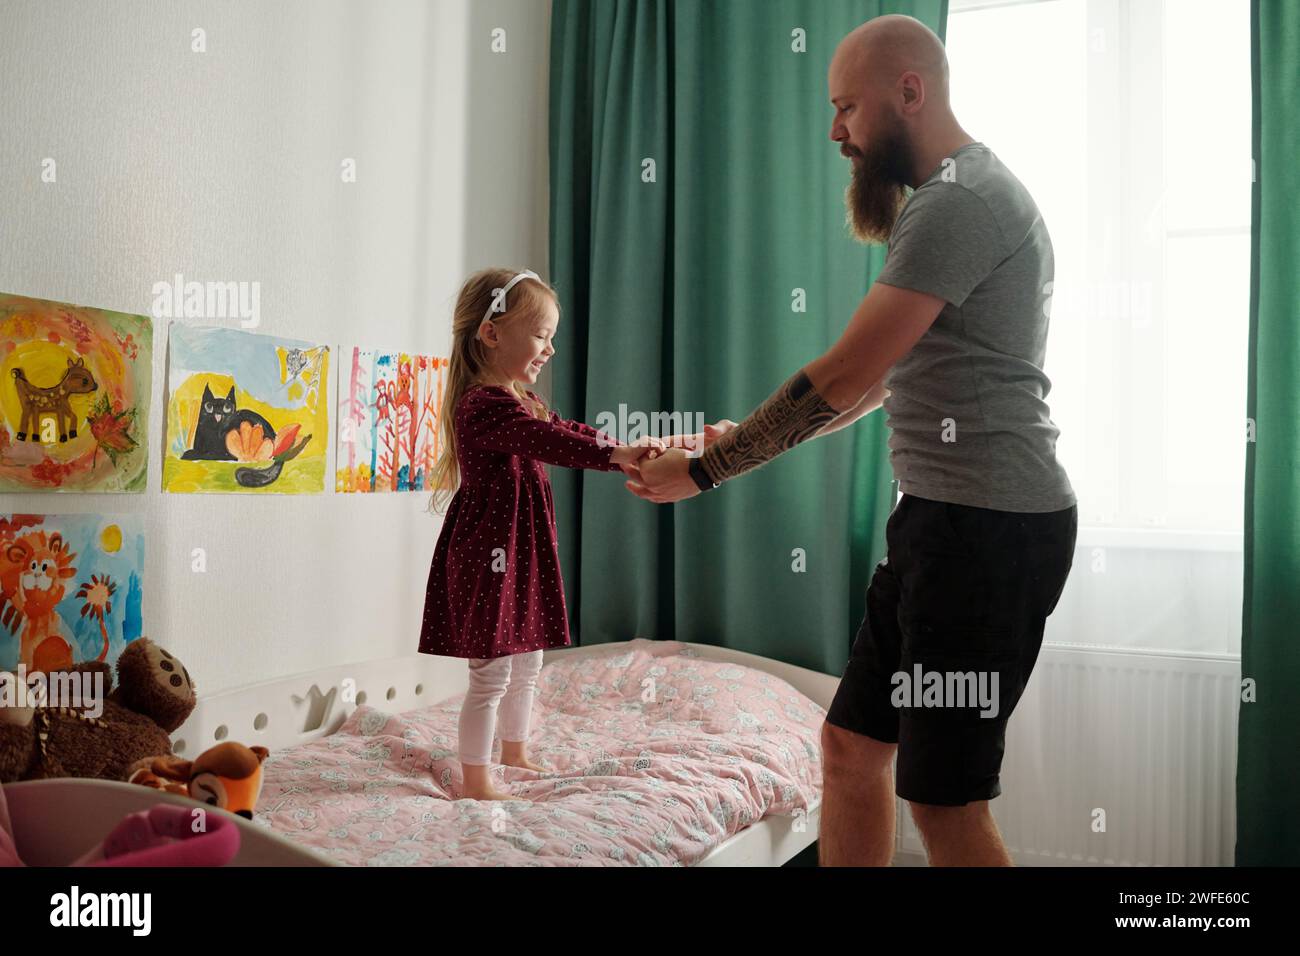 Seitenansicht eines jungen bärtigen Vaters, der seine liebenswerte kleine Tochter an den Händen hält, während er vor dem Bett vor grünen Vorhängen steht Stockfoto